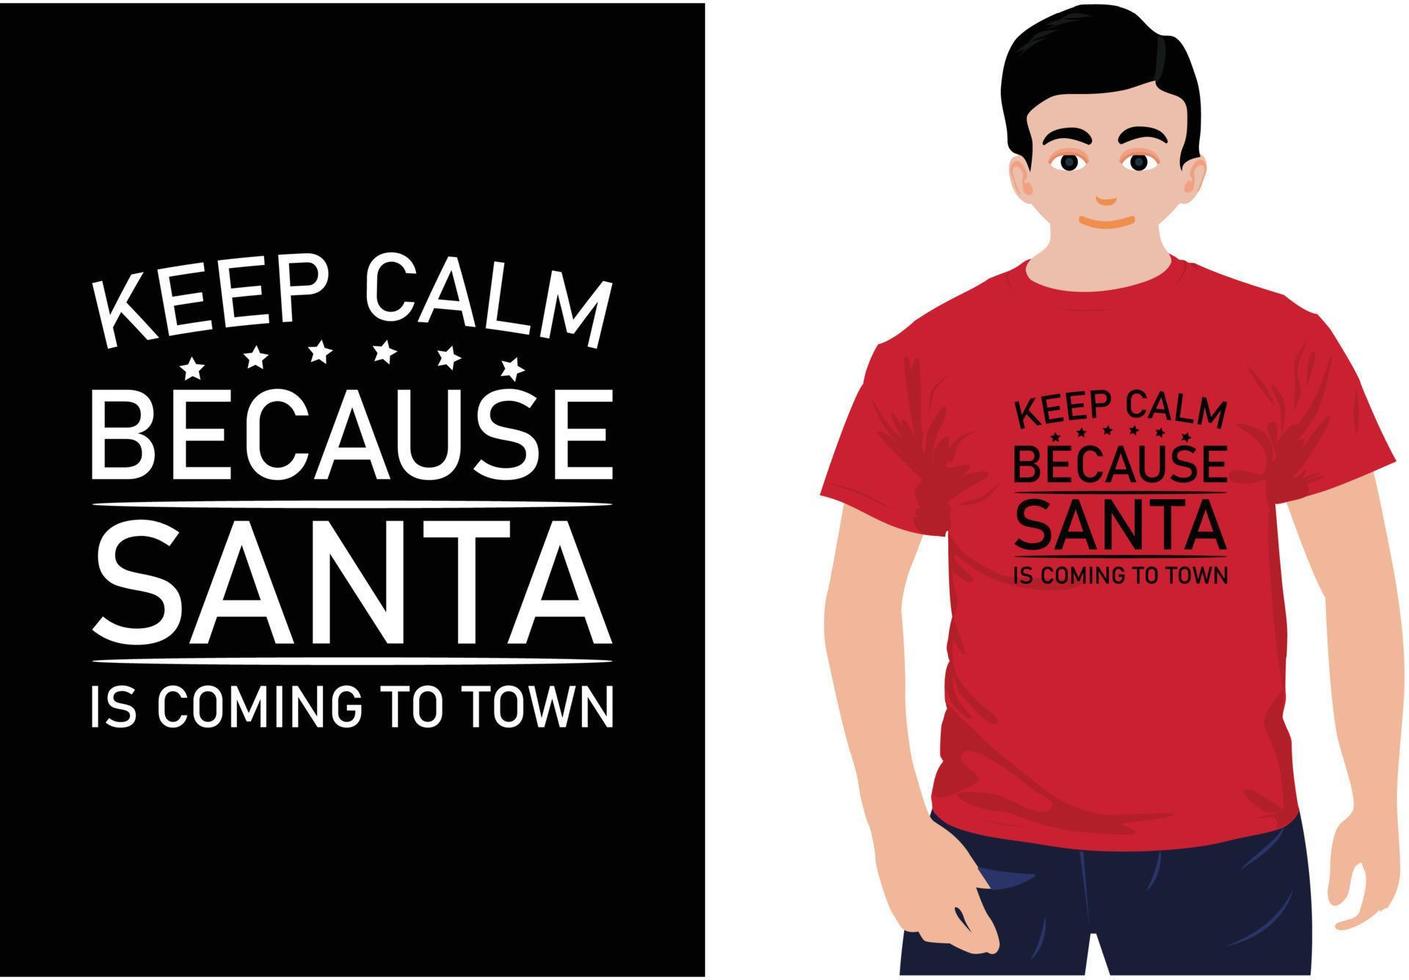 Bleib ruhig, denn der Weihnachtsmann kommt in die Stadt. Sankt-Weihnachtst-shirt. vektor